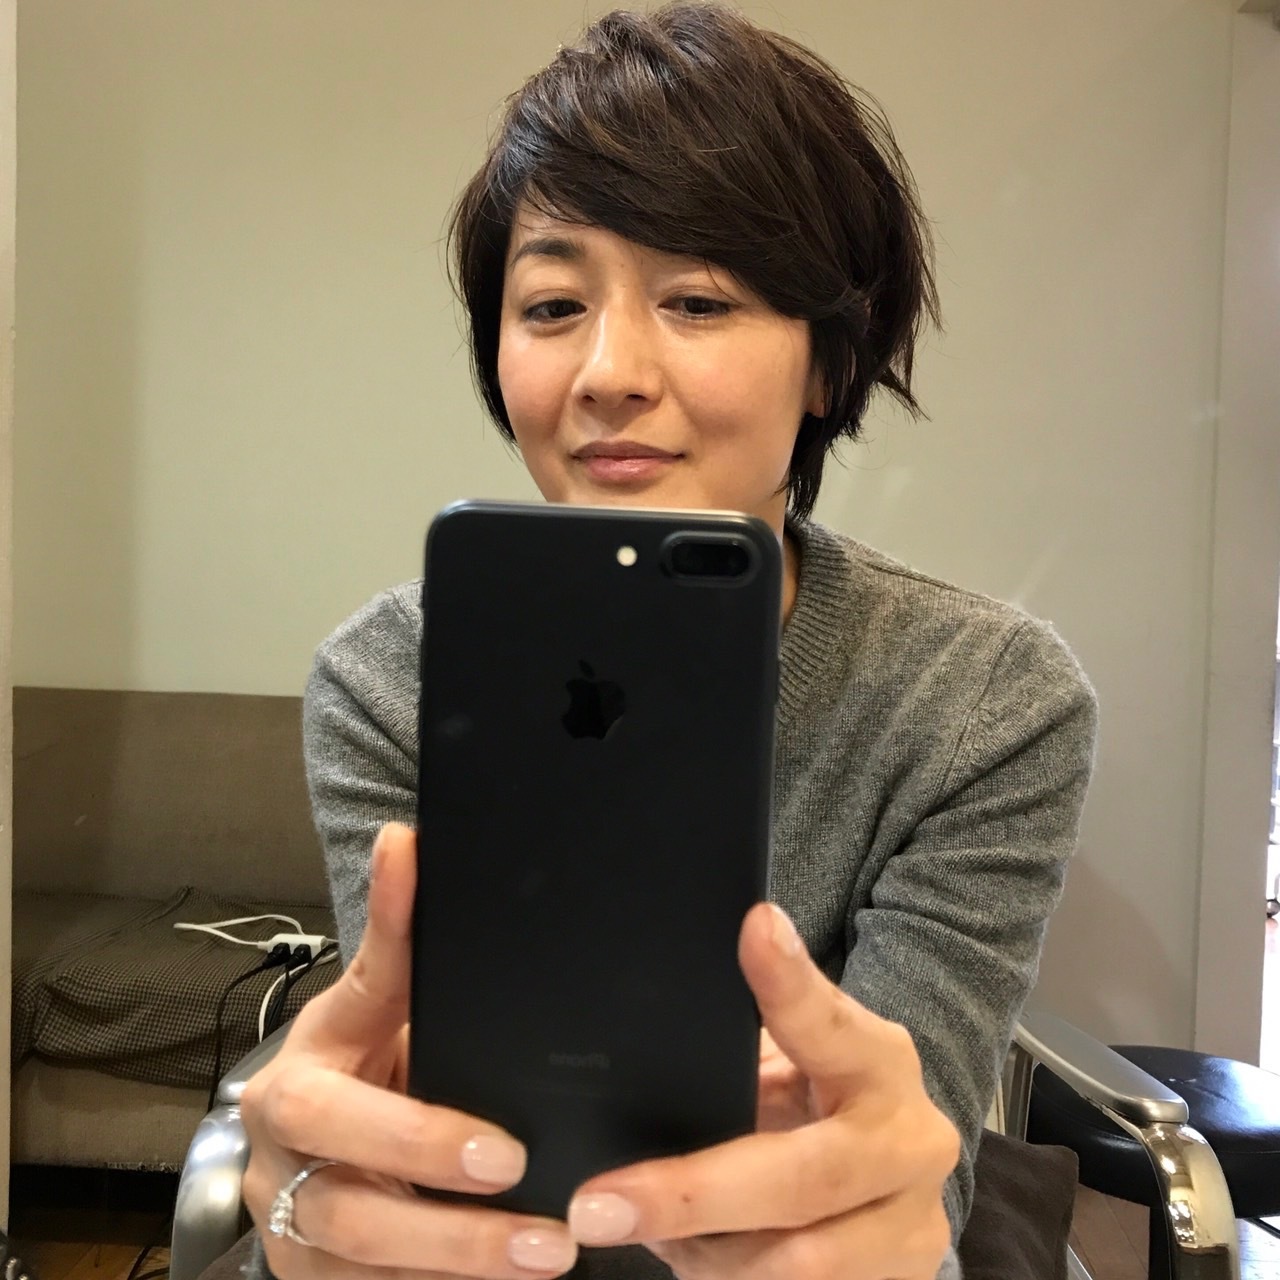 富岡佳子の髪型21選 人気ランキング21最新版 歳を重ねても美しい Rank1 ランク1 人気ランキングまとめサイト 国内最大級